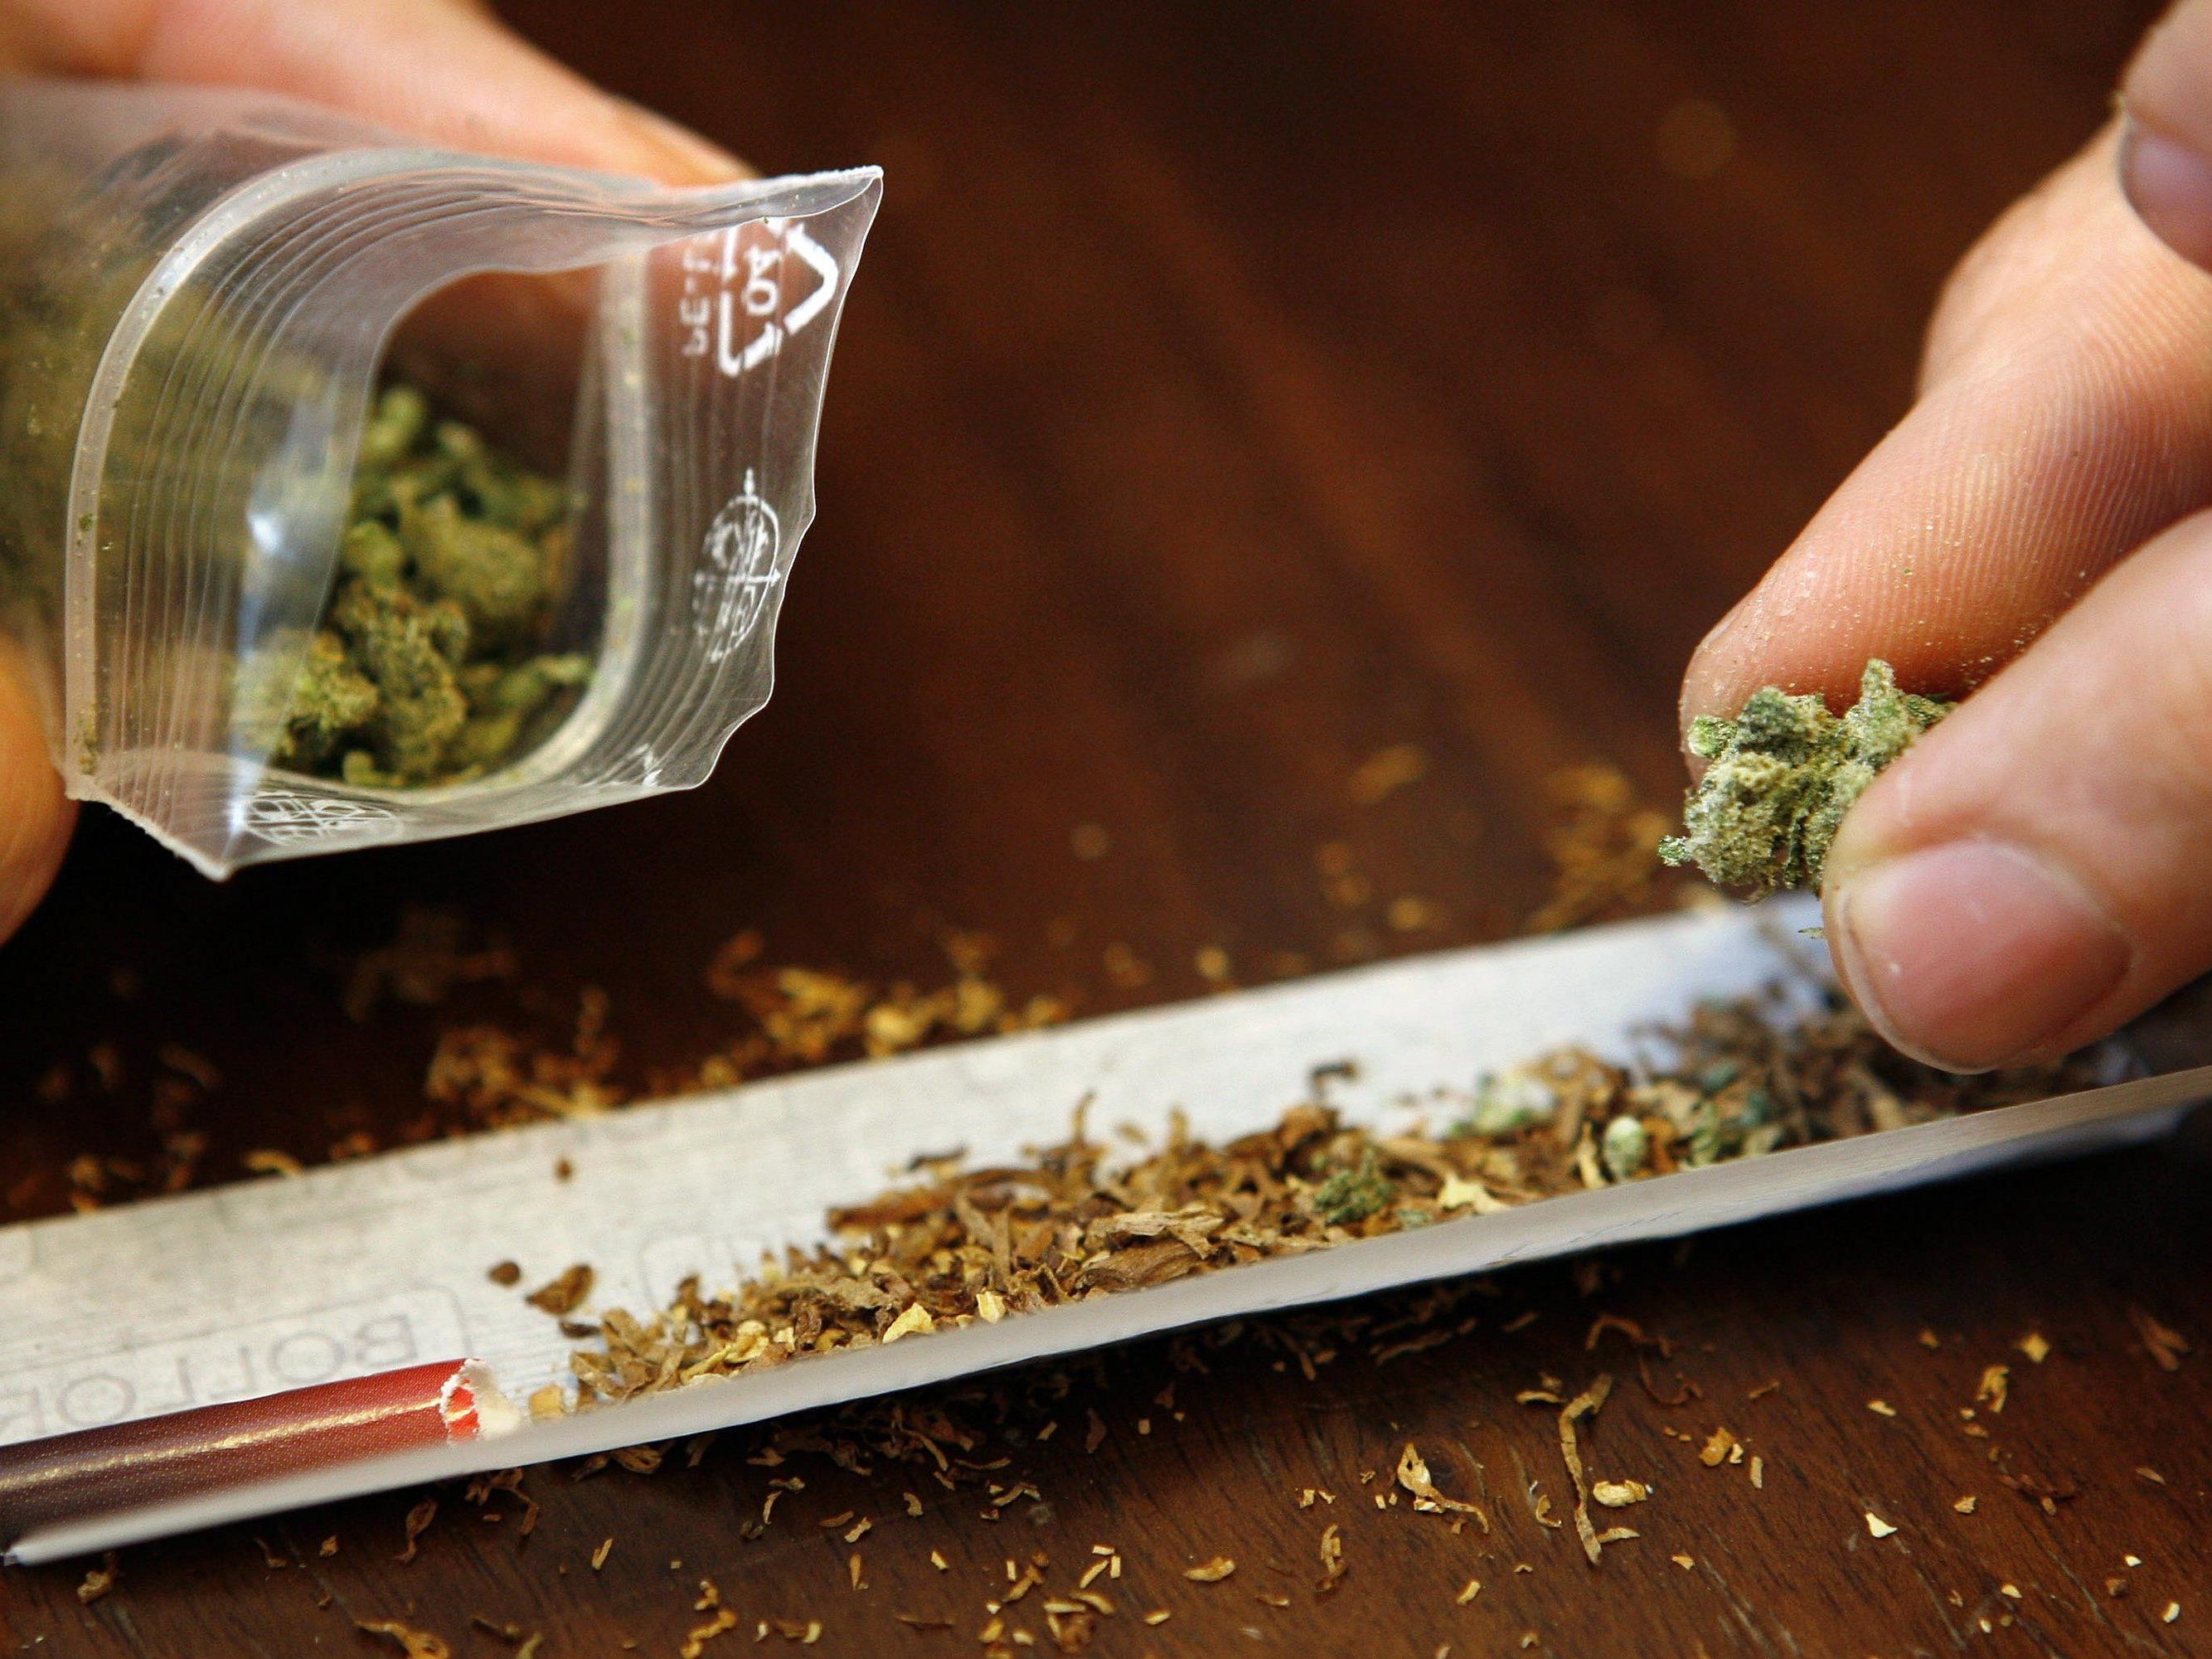 In einem Zug wurden eineinhalb Kilogramm Marihuana gefunden.